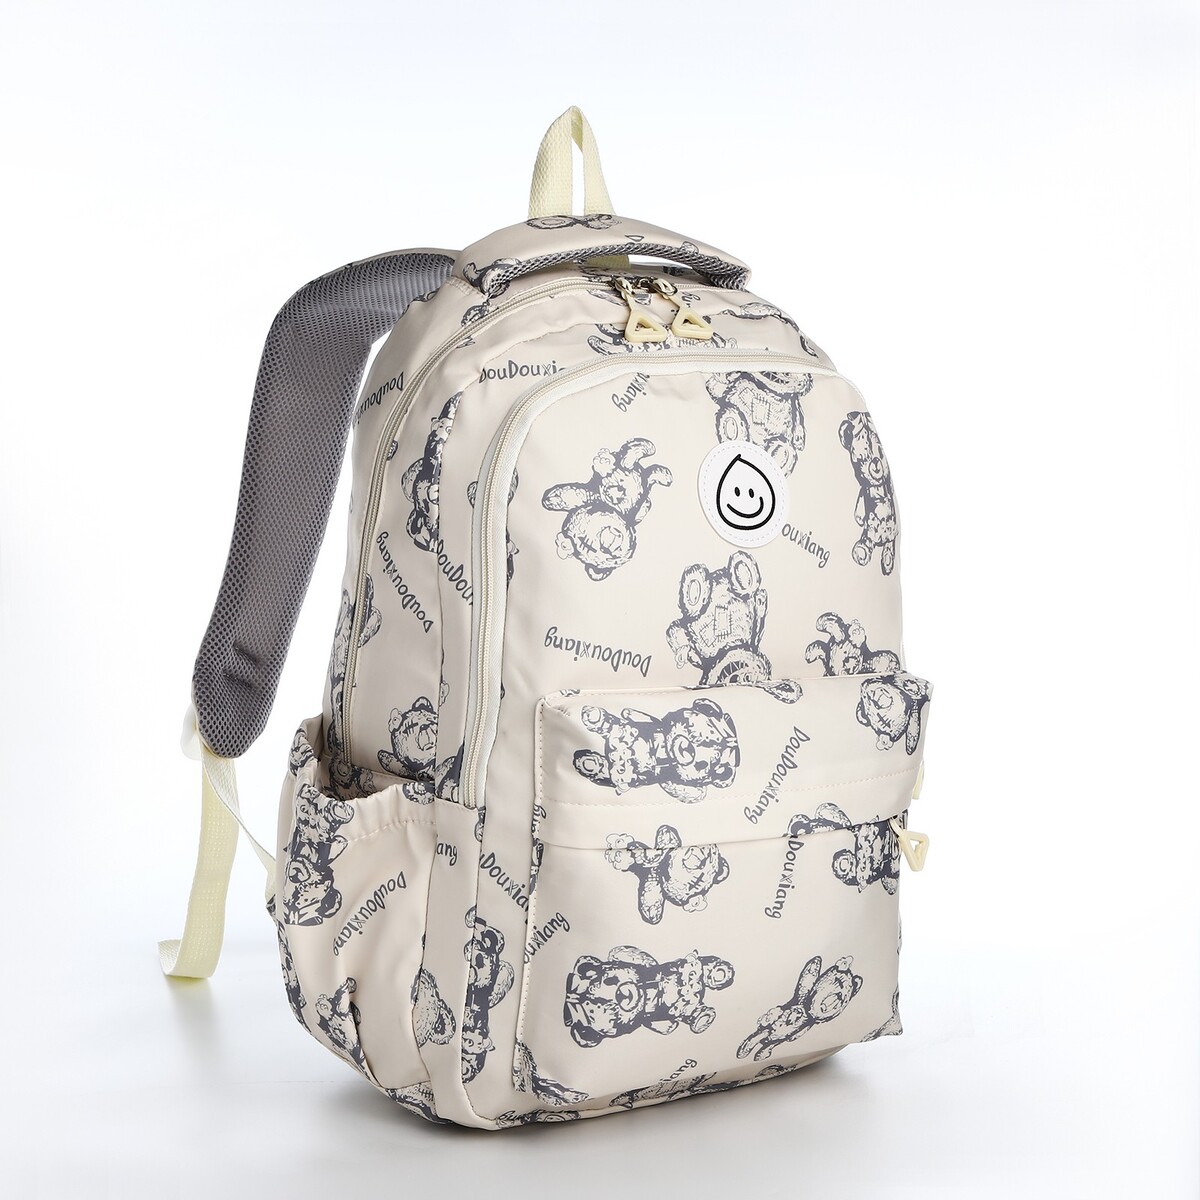 Рюкзак школьный из текстиля на молнии, 4 кармана, цвет бежевый рюкзак молодежный из текстиля на молнии 4 кармана бежевый